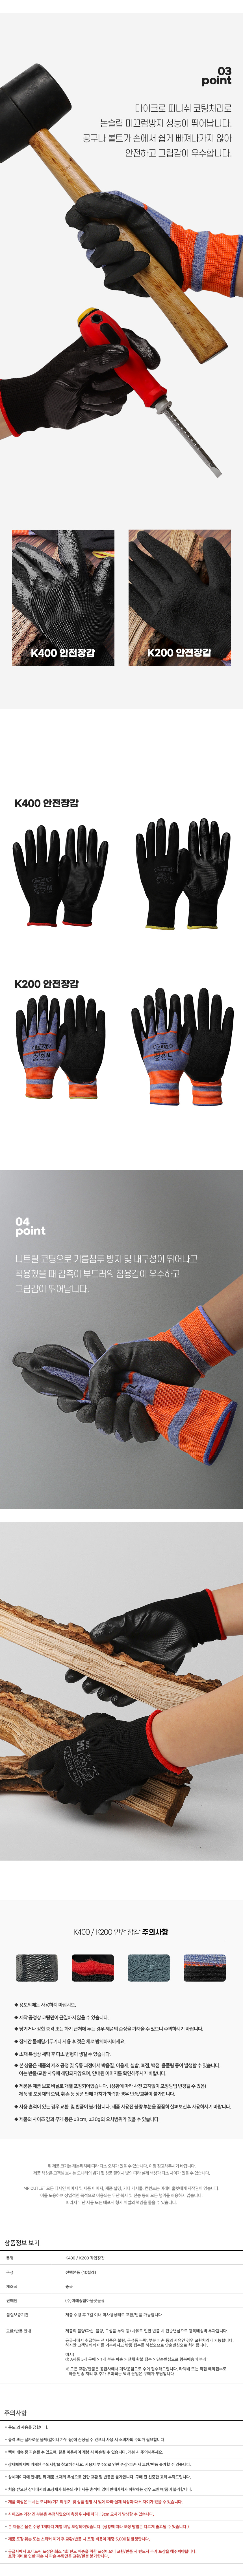 1222_K200_K400_work_gloves_02.jpg